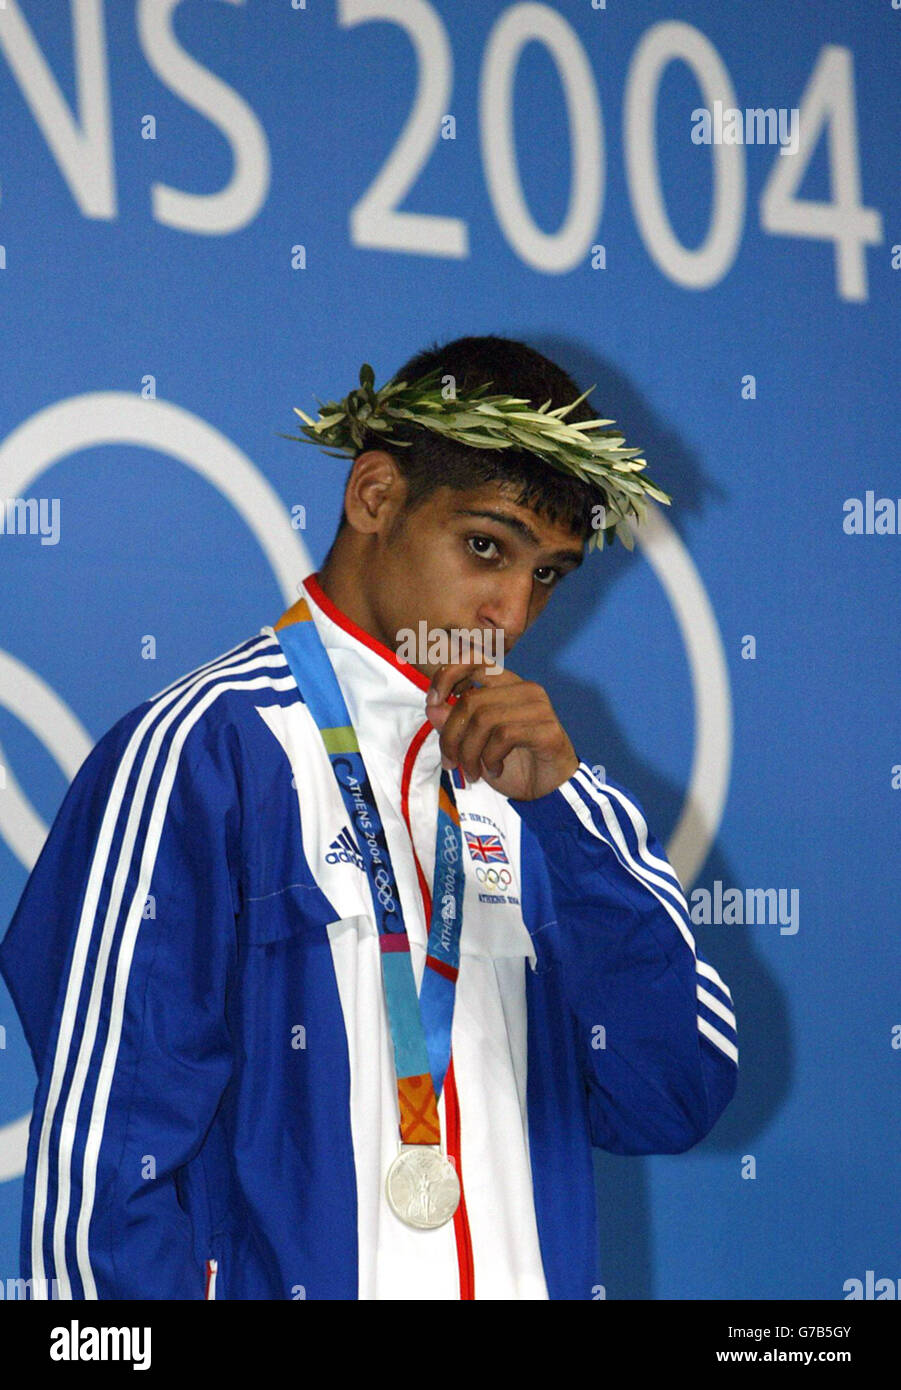 Amir Khan, de Grande-Bretagne, se tient sur le podium avec sa médaille d'argent après avoir perdu à Mario Kindelan, de Cuba, dans la finale de boxe légère à la salle de boxe olympique Peristeri à Athènes, en Grèce. Banque D'Images